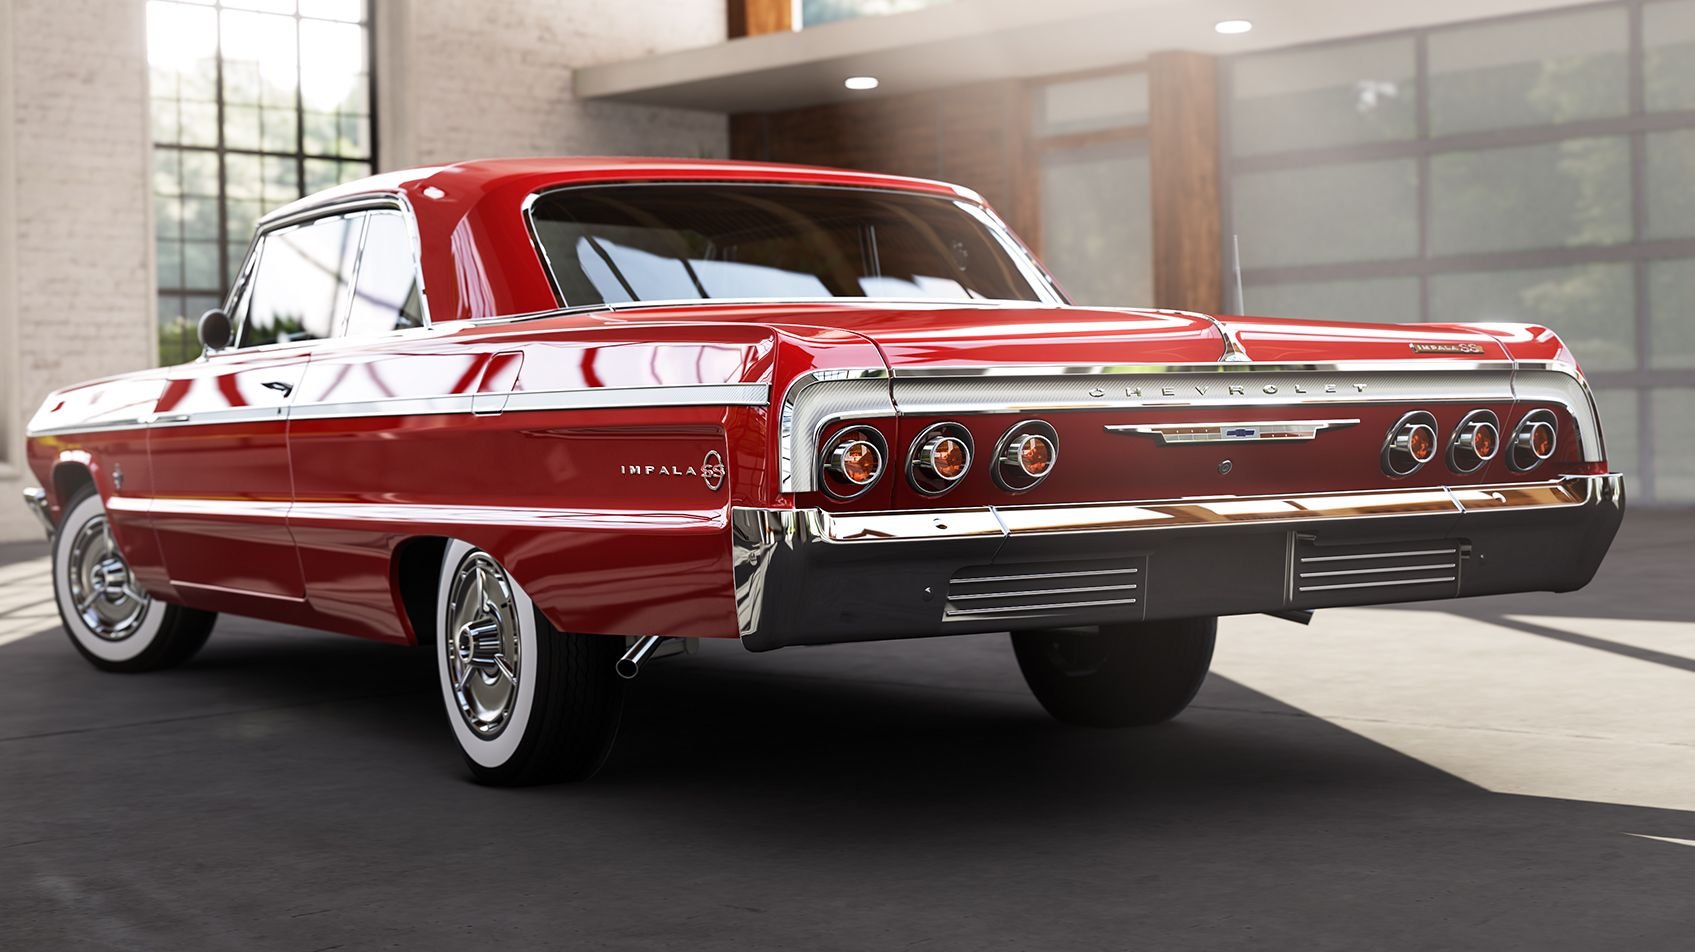 Chevrolet Impala 1964. Chevrolet Impala 1964 chevy. 1964 Chevrolet Impala SS Lowrider. Chevrolet Chevelle 1964.